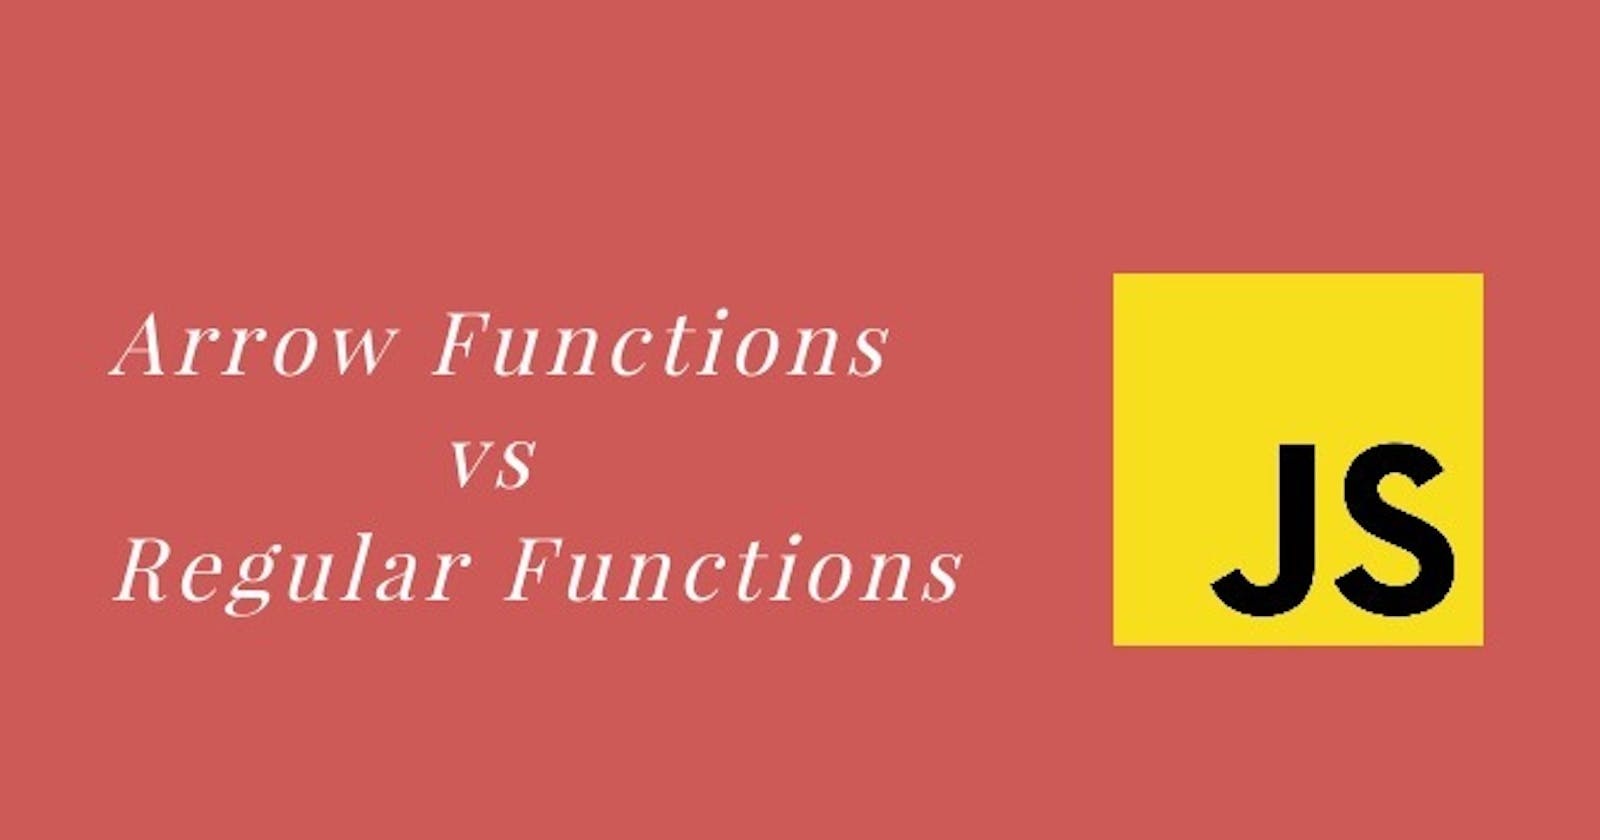 Regular Functions VS Arrow Functions